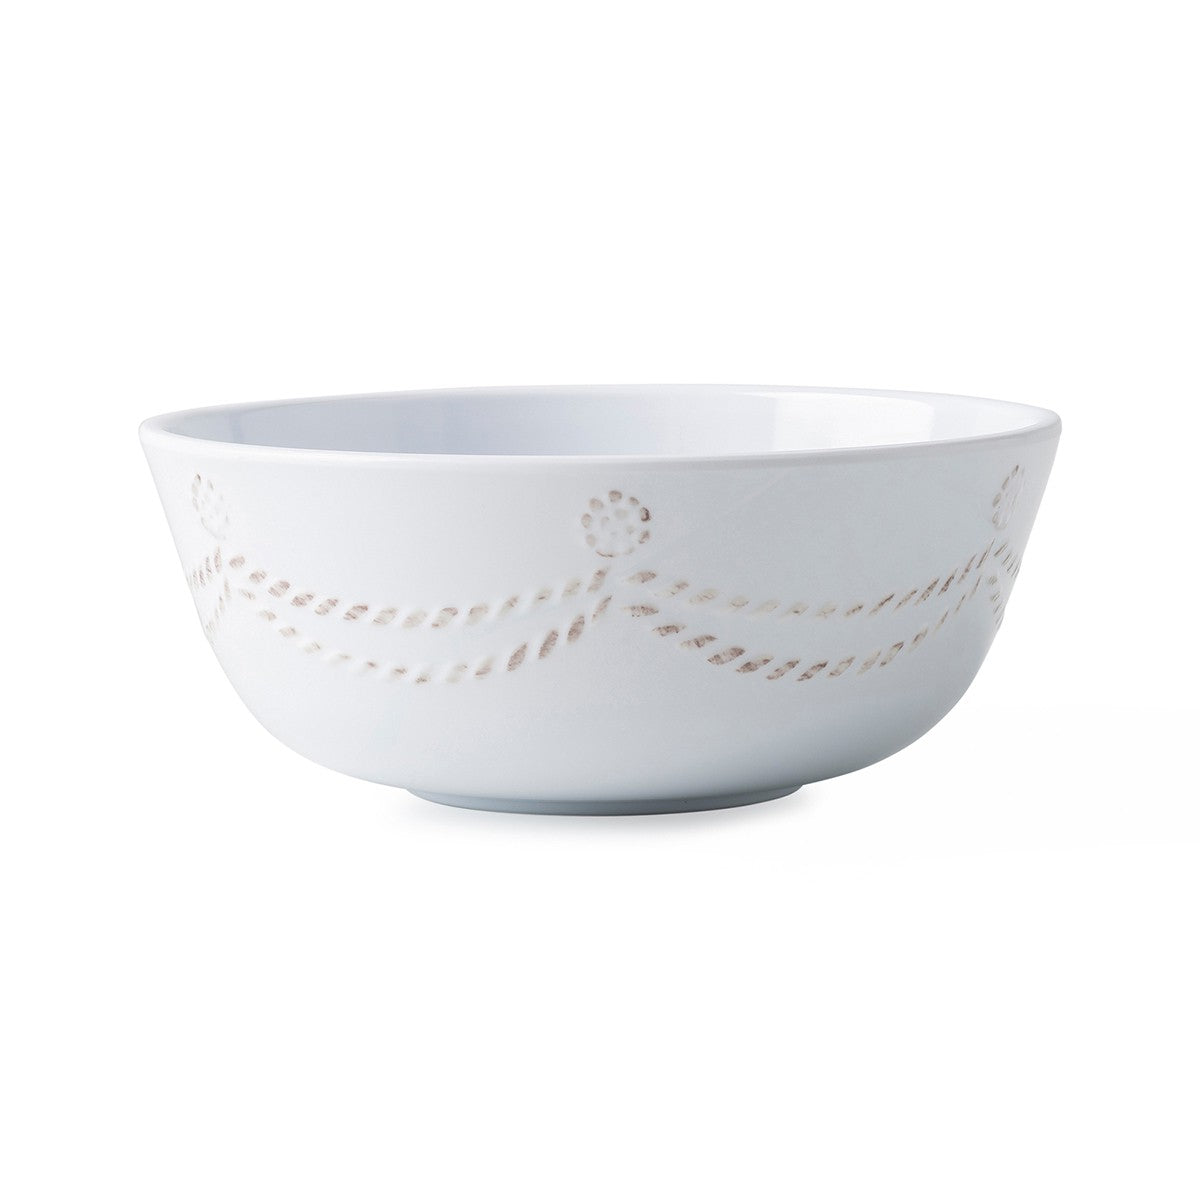 Juliska Berry & Thread Melamine Cereal Bowl - White